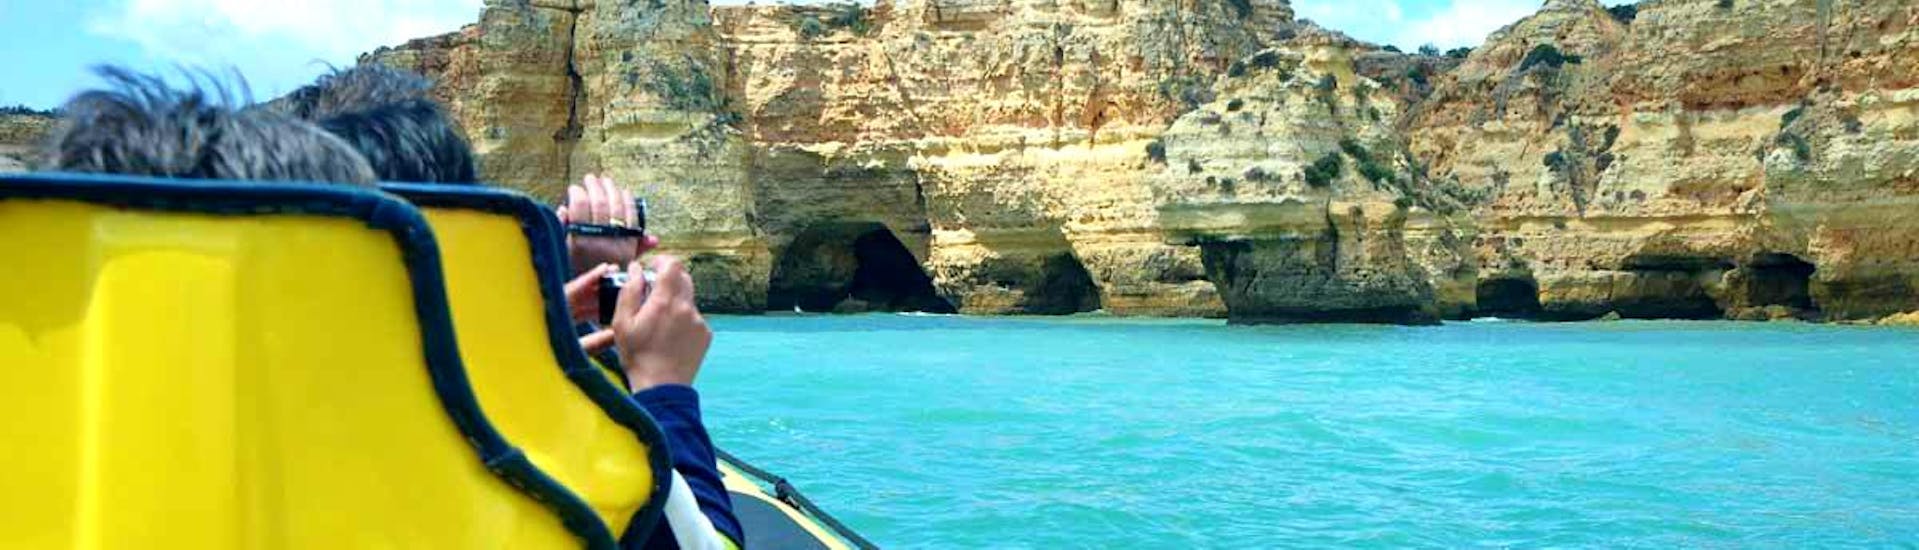 Los pasajeros del Insónia disfrutan de la hermosa vista de la costa en su paseo en barco "Cuevas y Delfines en el Insónia" en Albufeira.